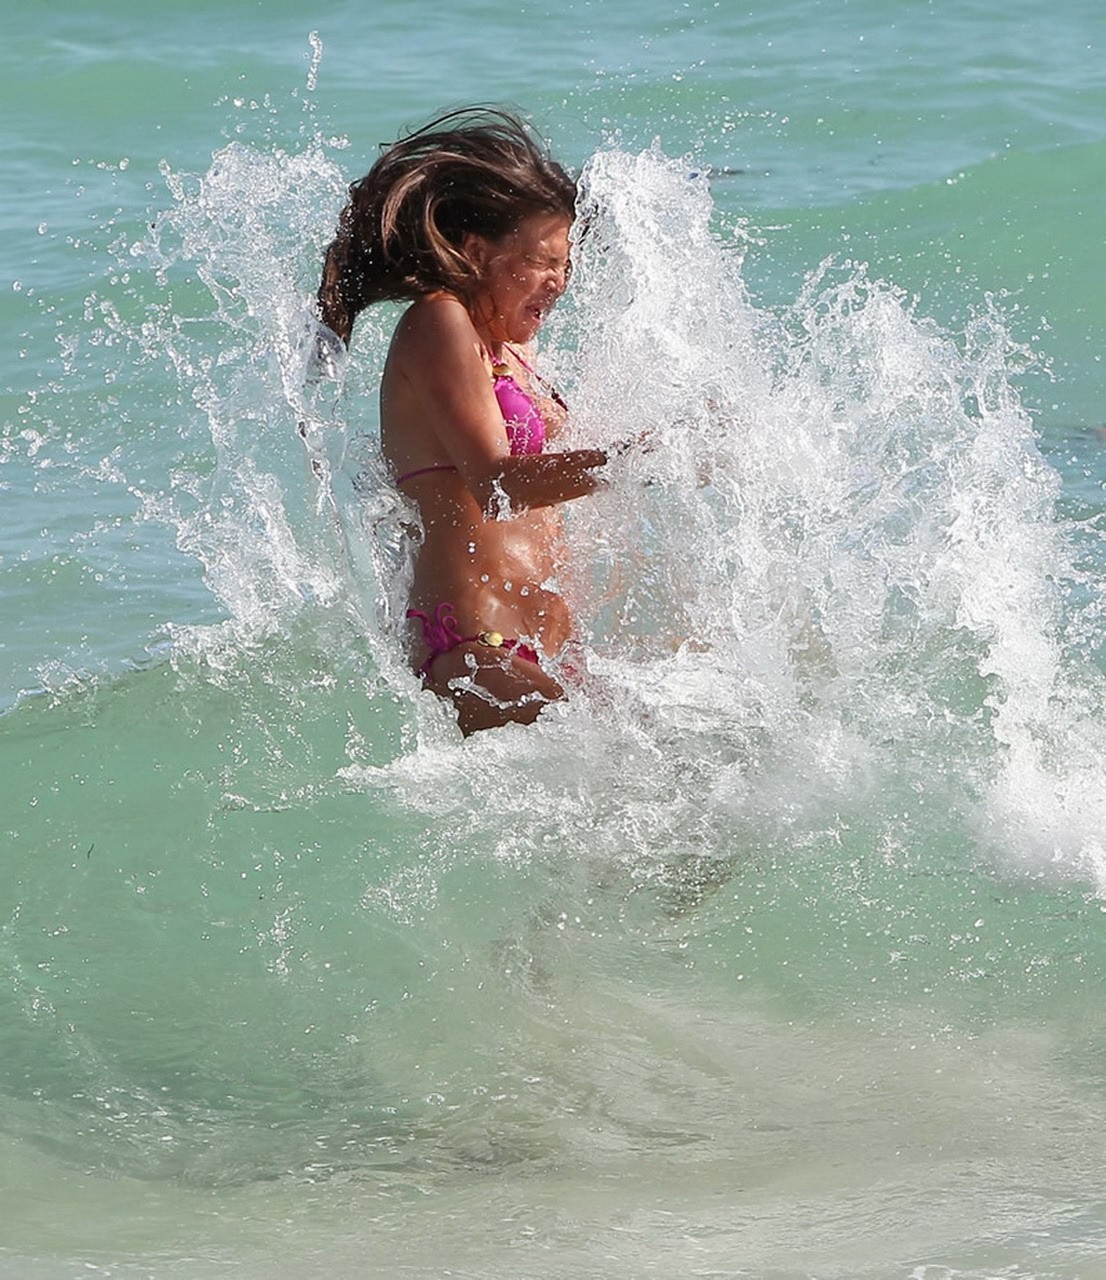 Claudia Galanti wearing skimpy pink bikini on a beach in Miami #75277585